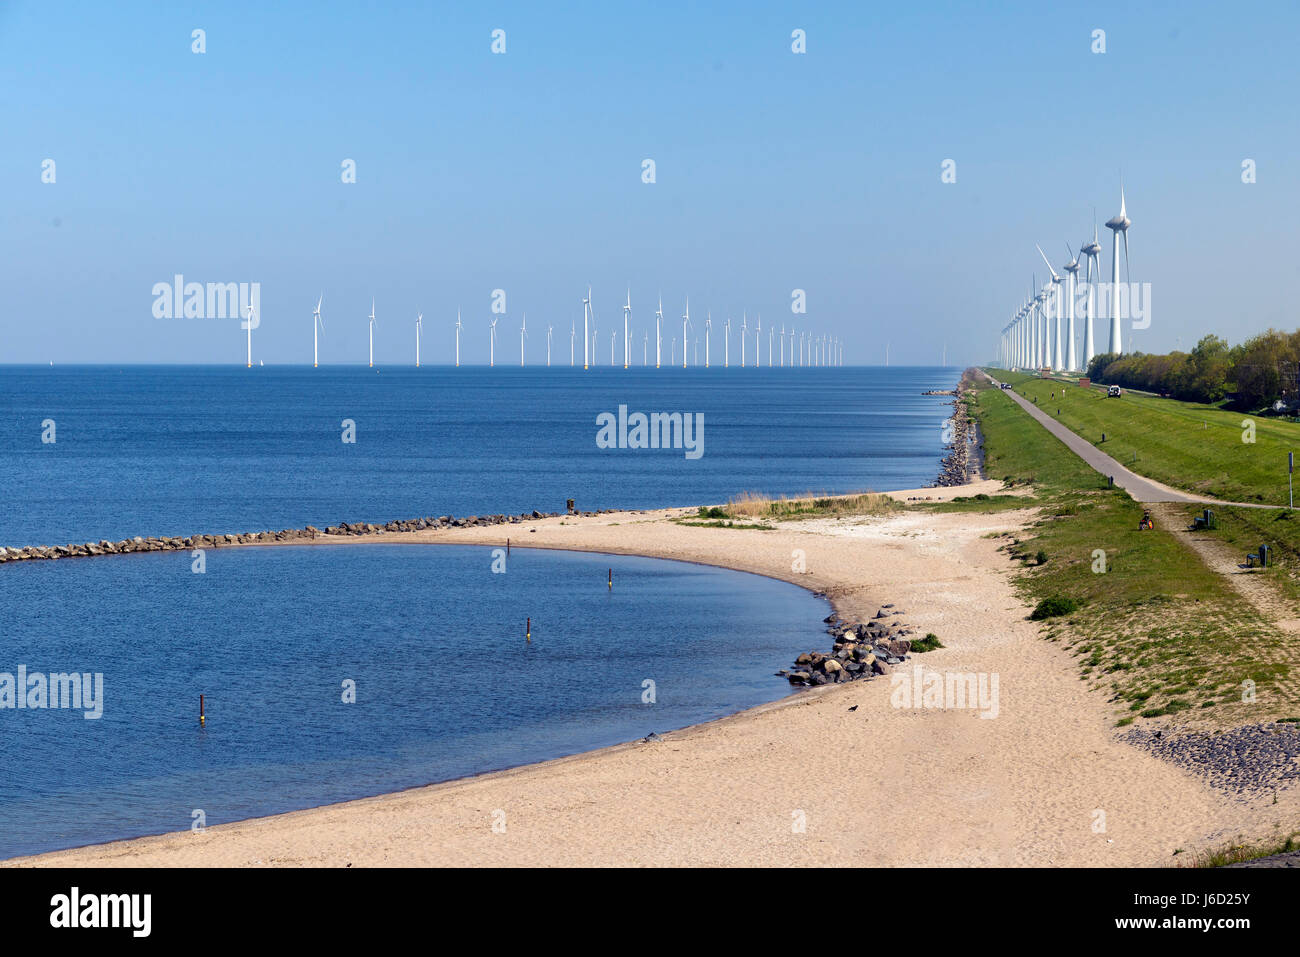 Les usines de production d'électricité au large de la côte d'Urk aux Pays-Bas Banque D'Images